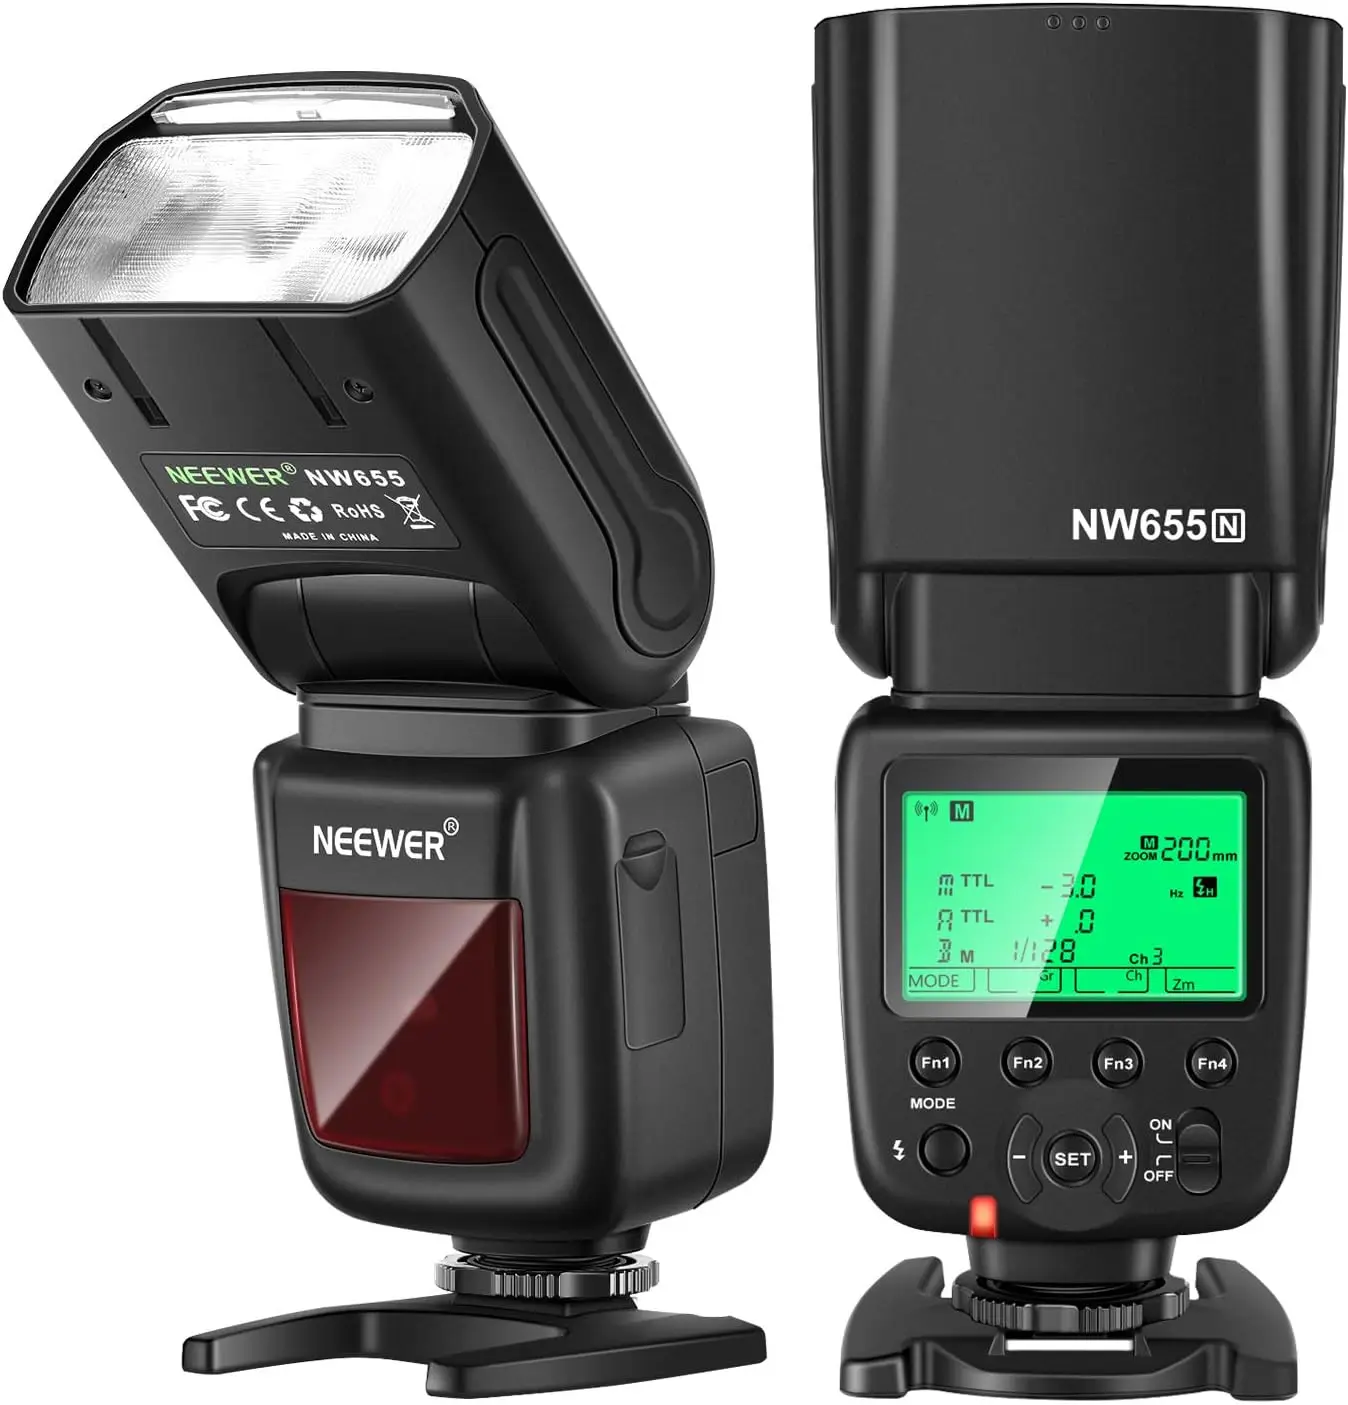 

Neewer NW655-N 2.4G HSS 1/8000s TTL GN60 Wireless Master Slave Flash Speedlite for Nikon D810/D800/D750/D700/D610/D600/D7500/D5